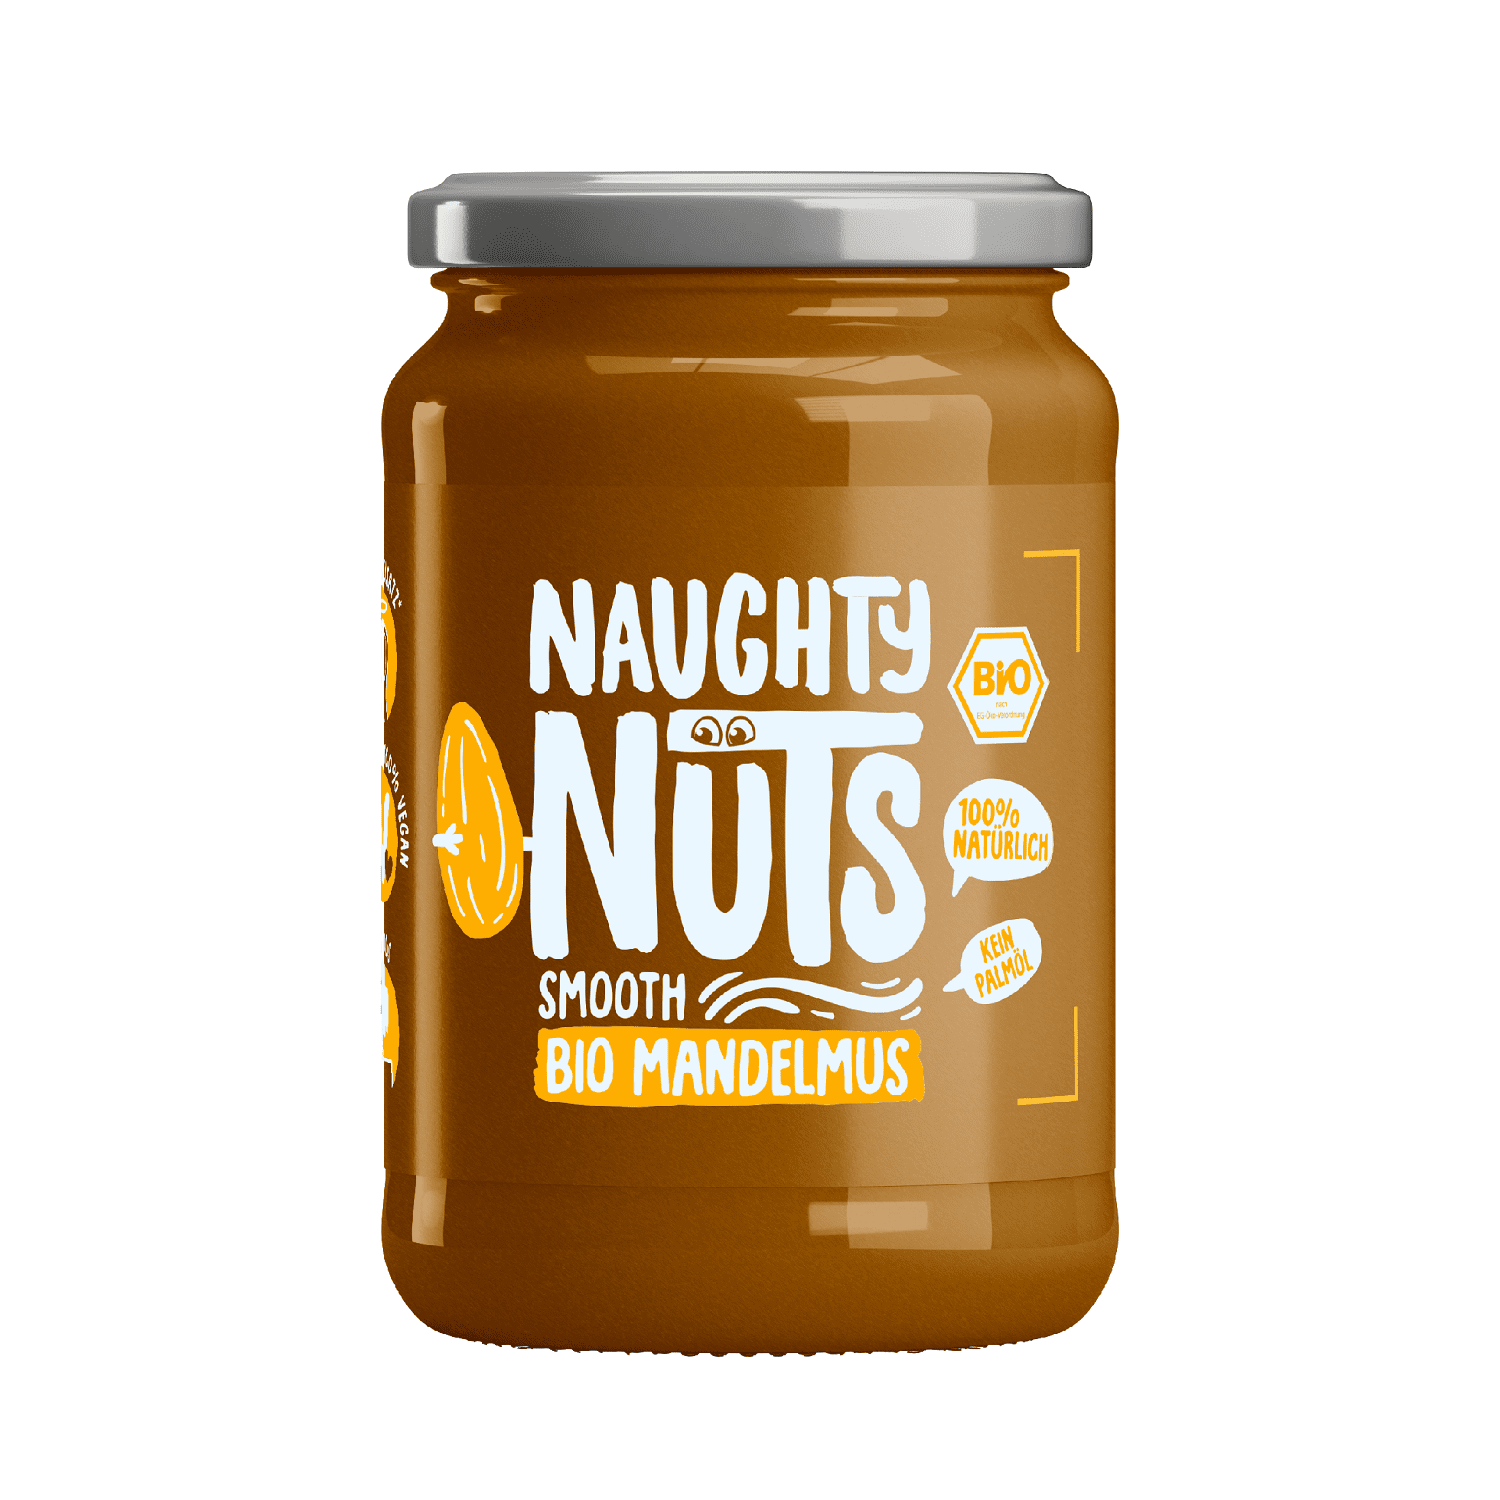 Naughty Nuts Bio Mandelmus Smooth 500g